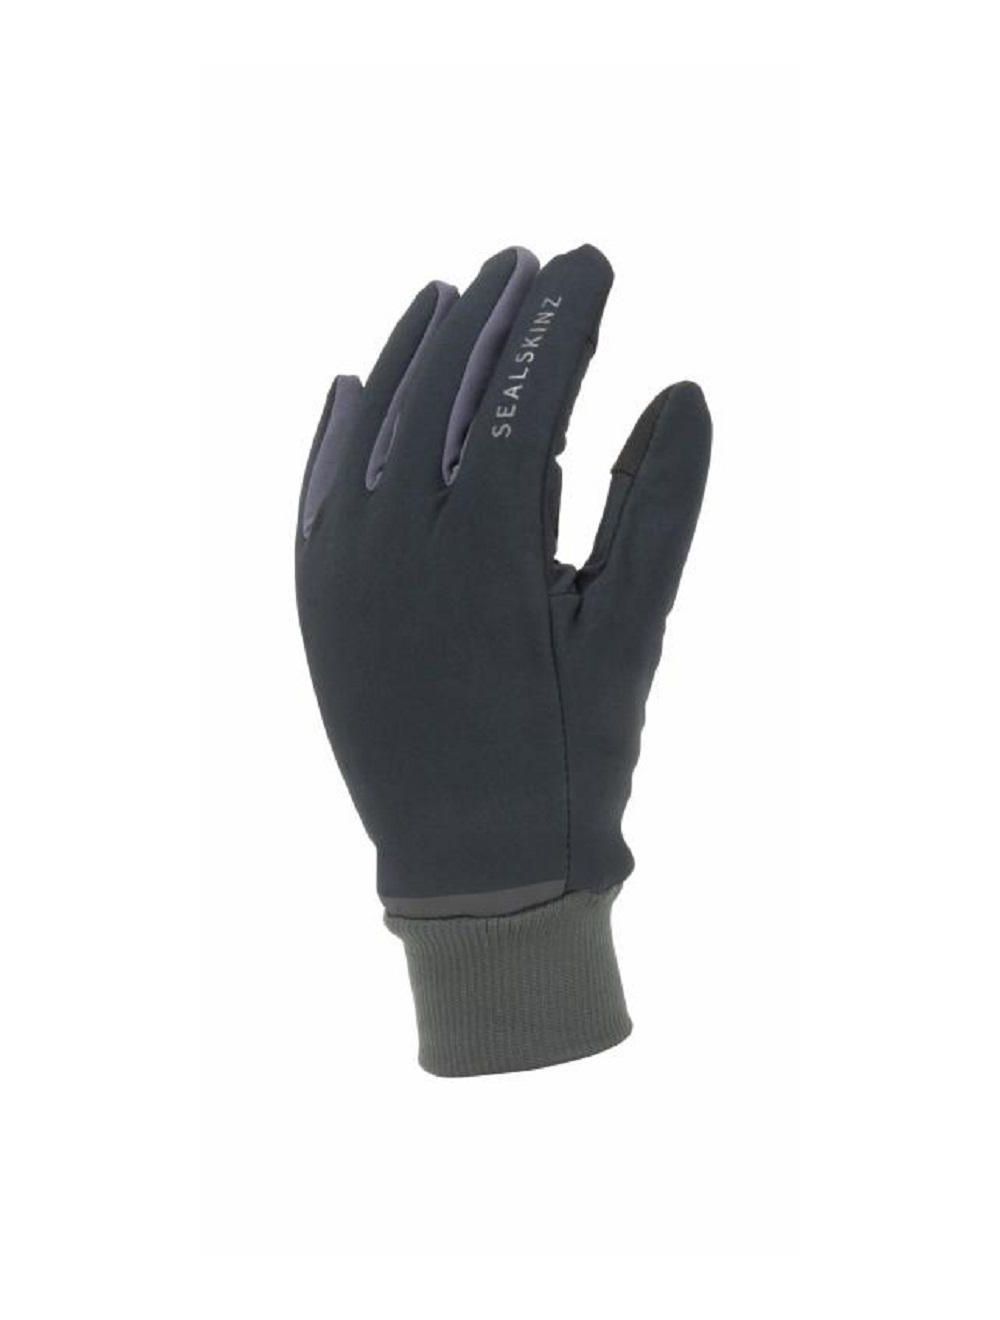 Sealskinz Waterproof all weather Controlª-Black/Grey € 69.95 | ⛰️ | in Sealskinz uit het Handschoenen assortiment| Rien de Wolf